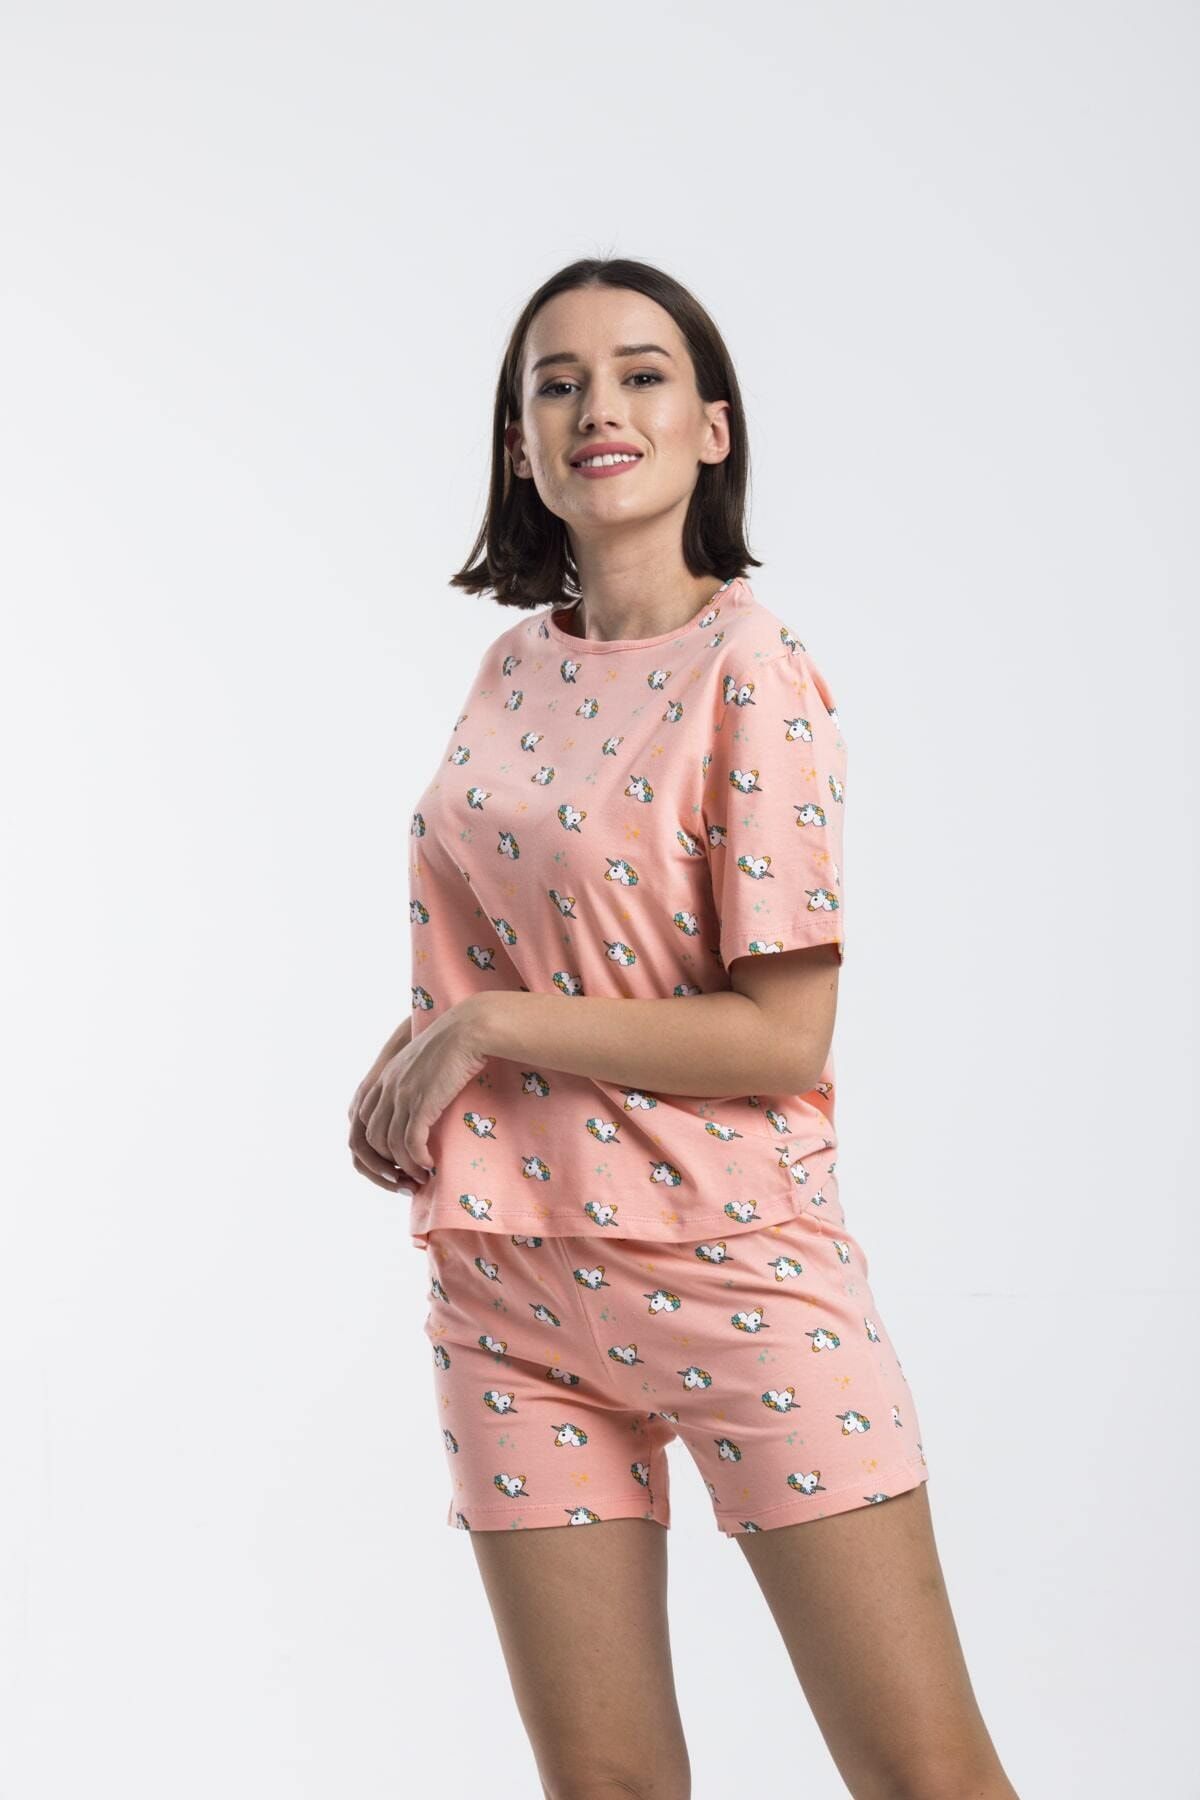 Moda Clubu Şortlu Pijama Takımı – Unicorn Desenli